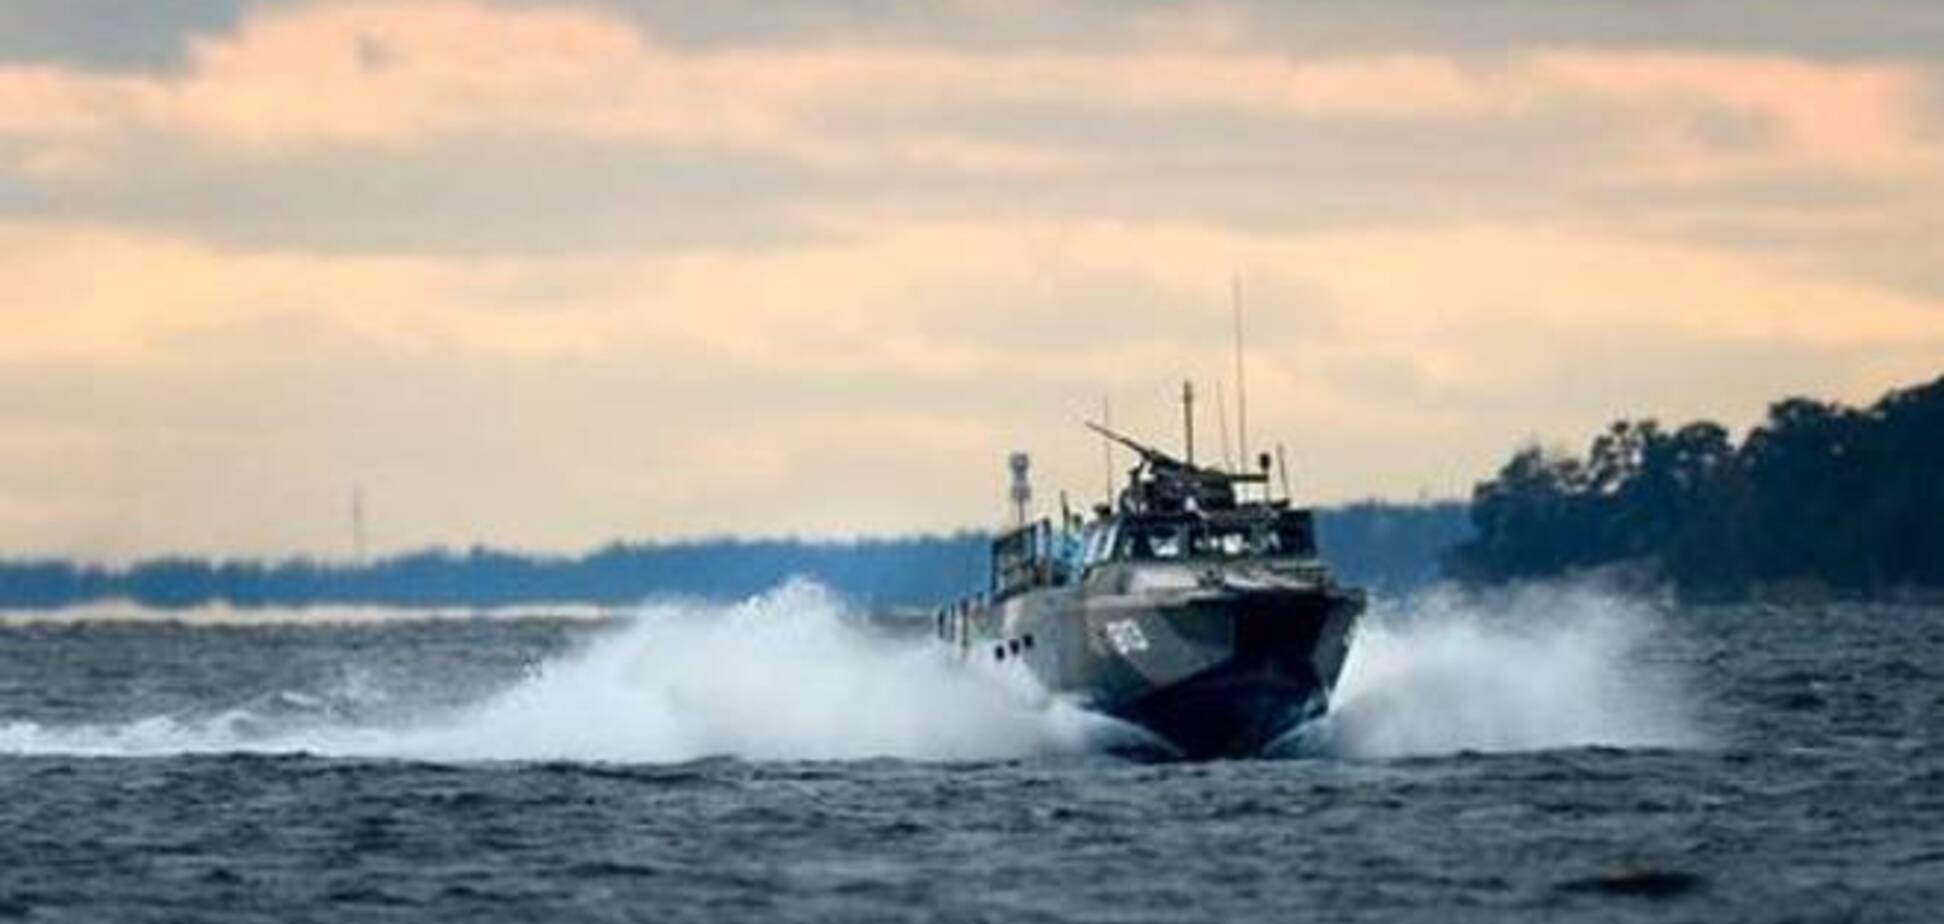 Вблизи Стокгольма ищут вторгшуюся русскую субмарину - СМИ